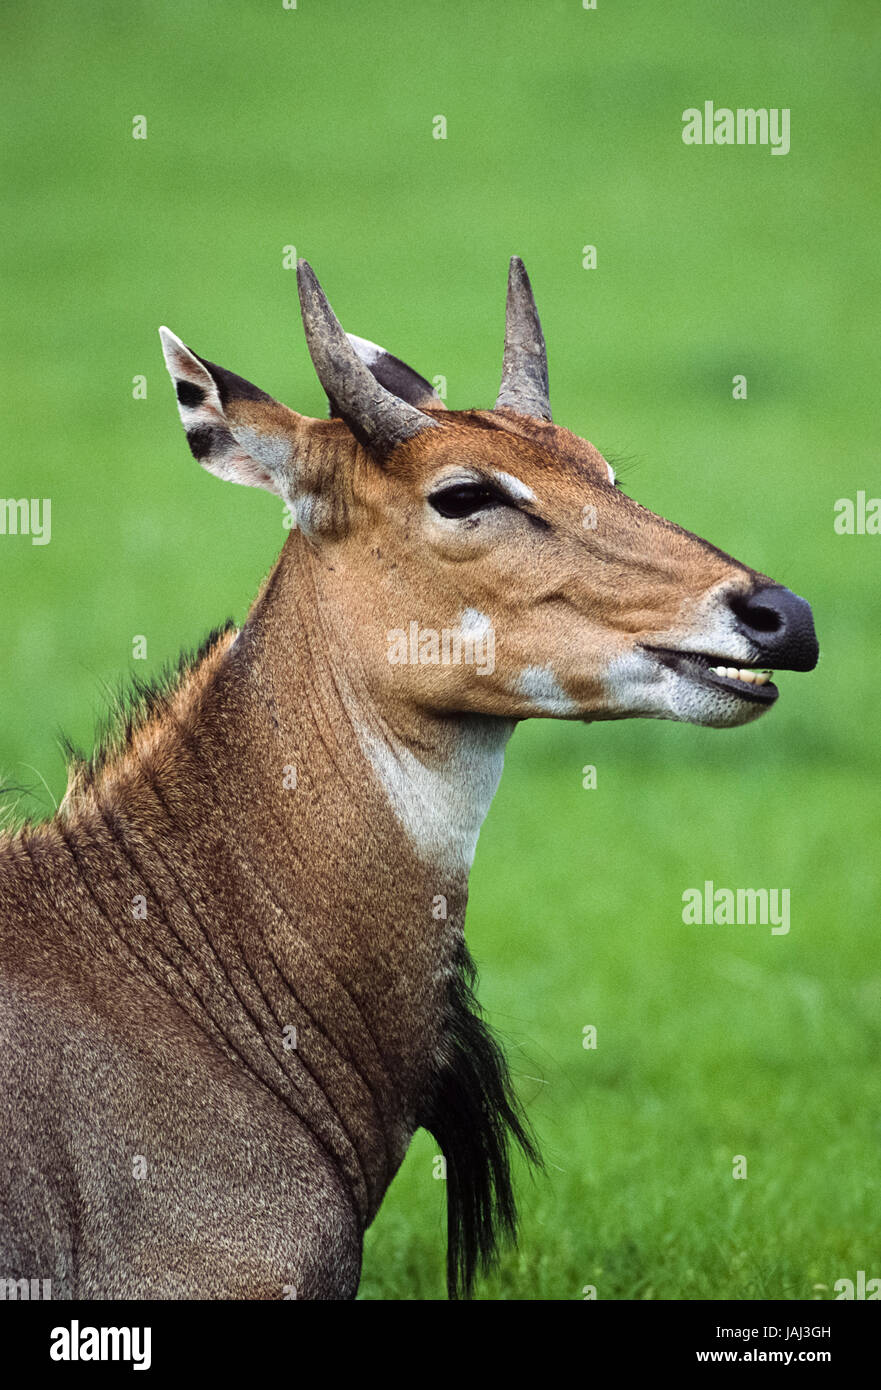 young, male Nilgai,Boselaphus tragocamelus, Keoladeo Ghana National Park, Bharatpur, Rajasthan, India Stock Photo